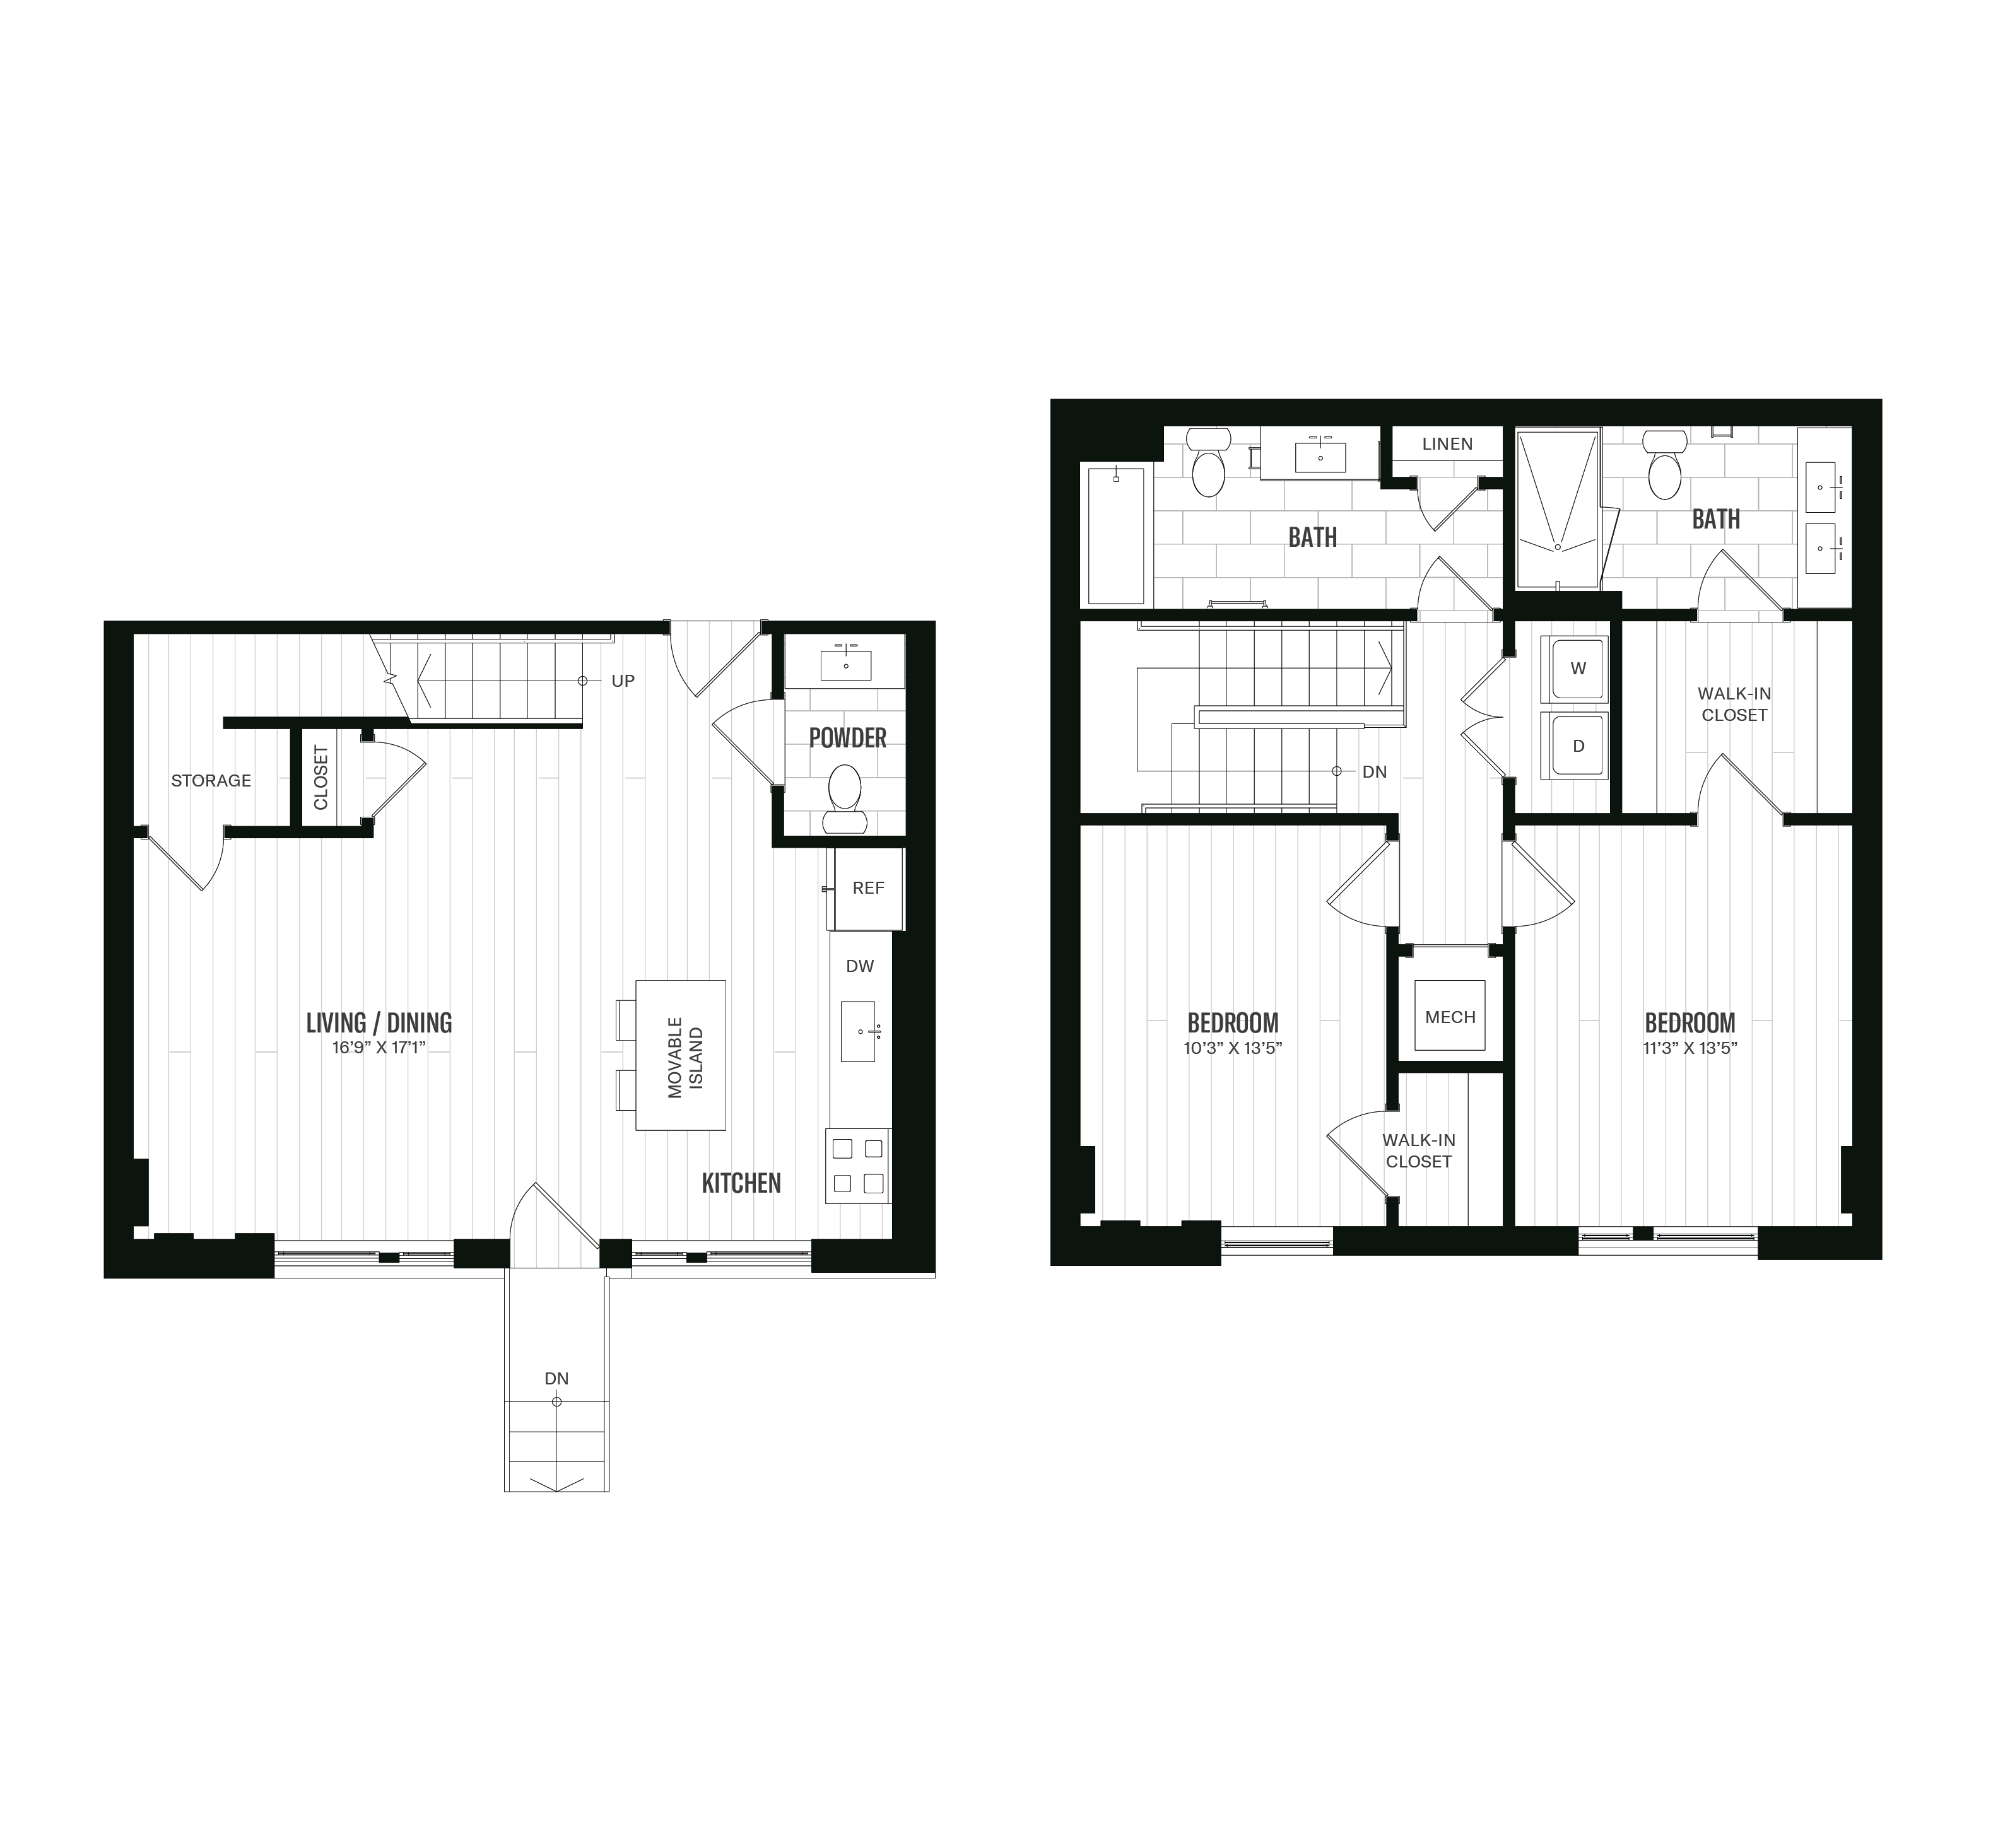 Floorplan image of unit 159